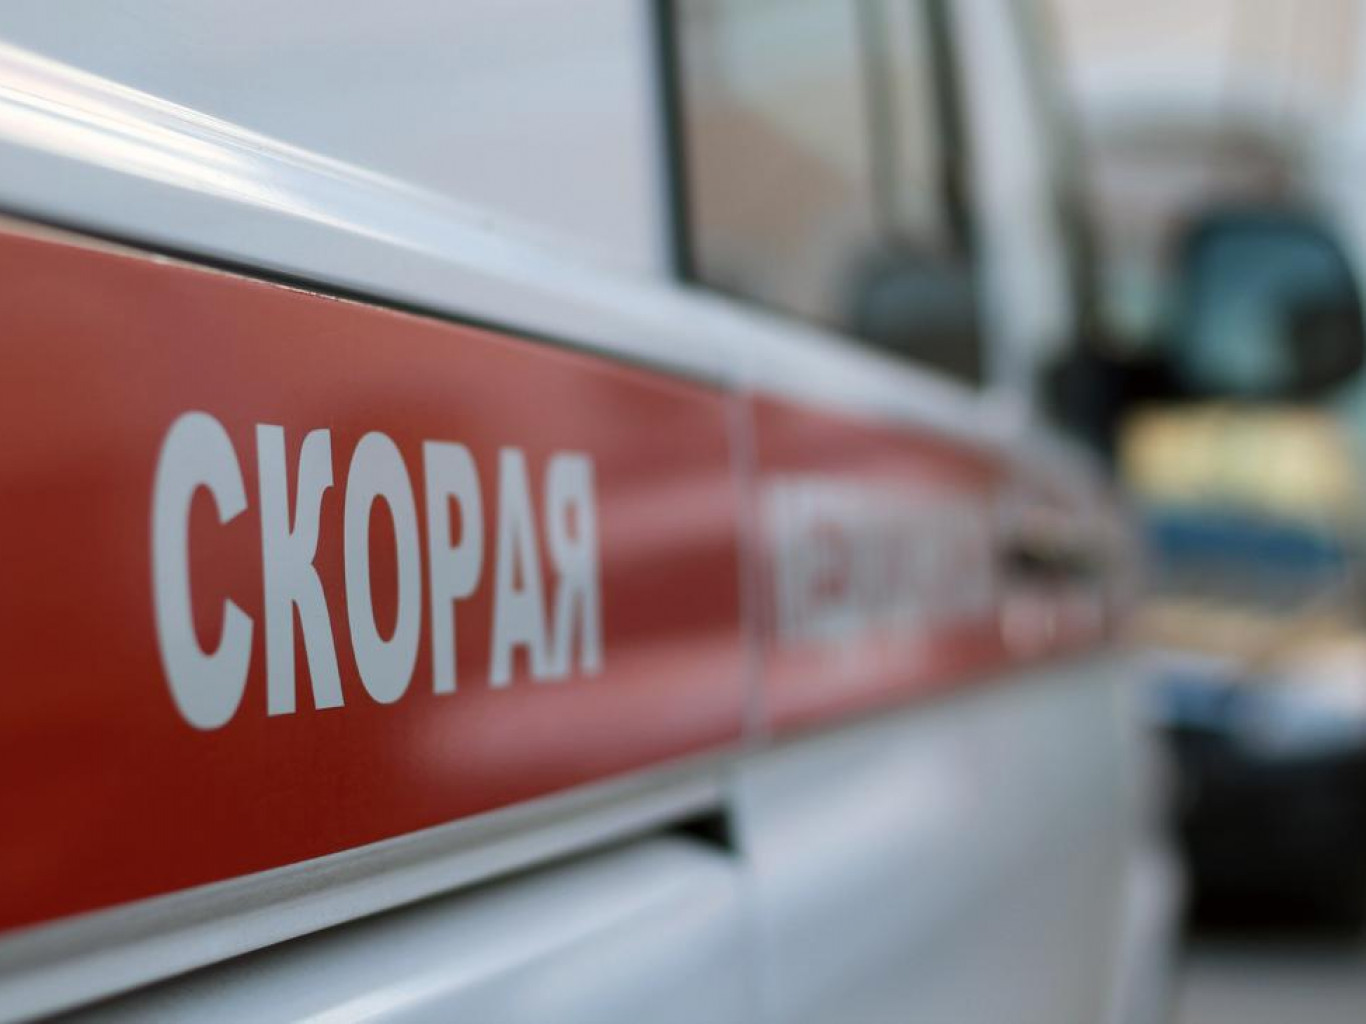 Фейки недели: «нацисты убили экипаж скорой помощи». Как работает беларусская пропаганда на войне в Украине?